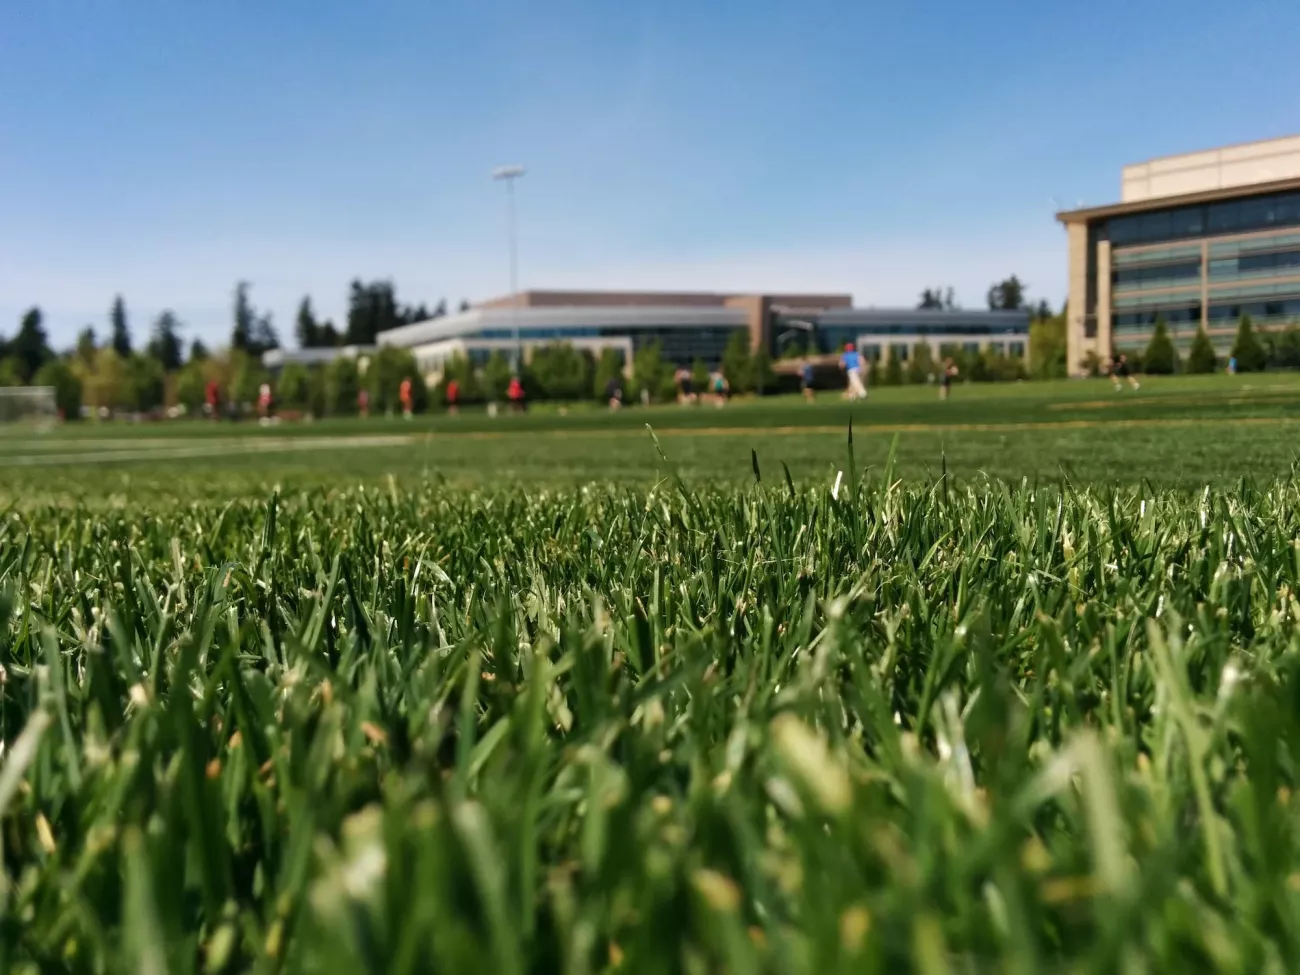 A green, grassy sports field.